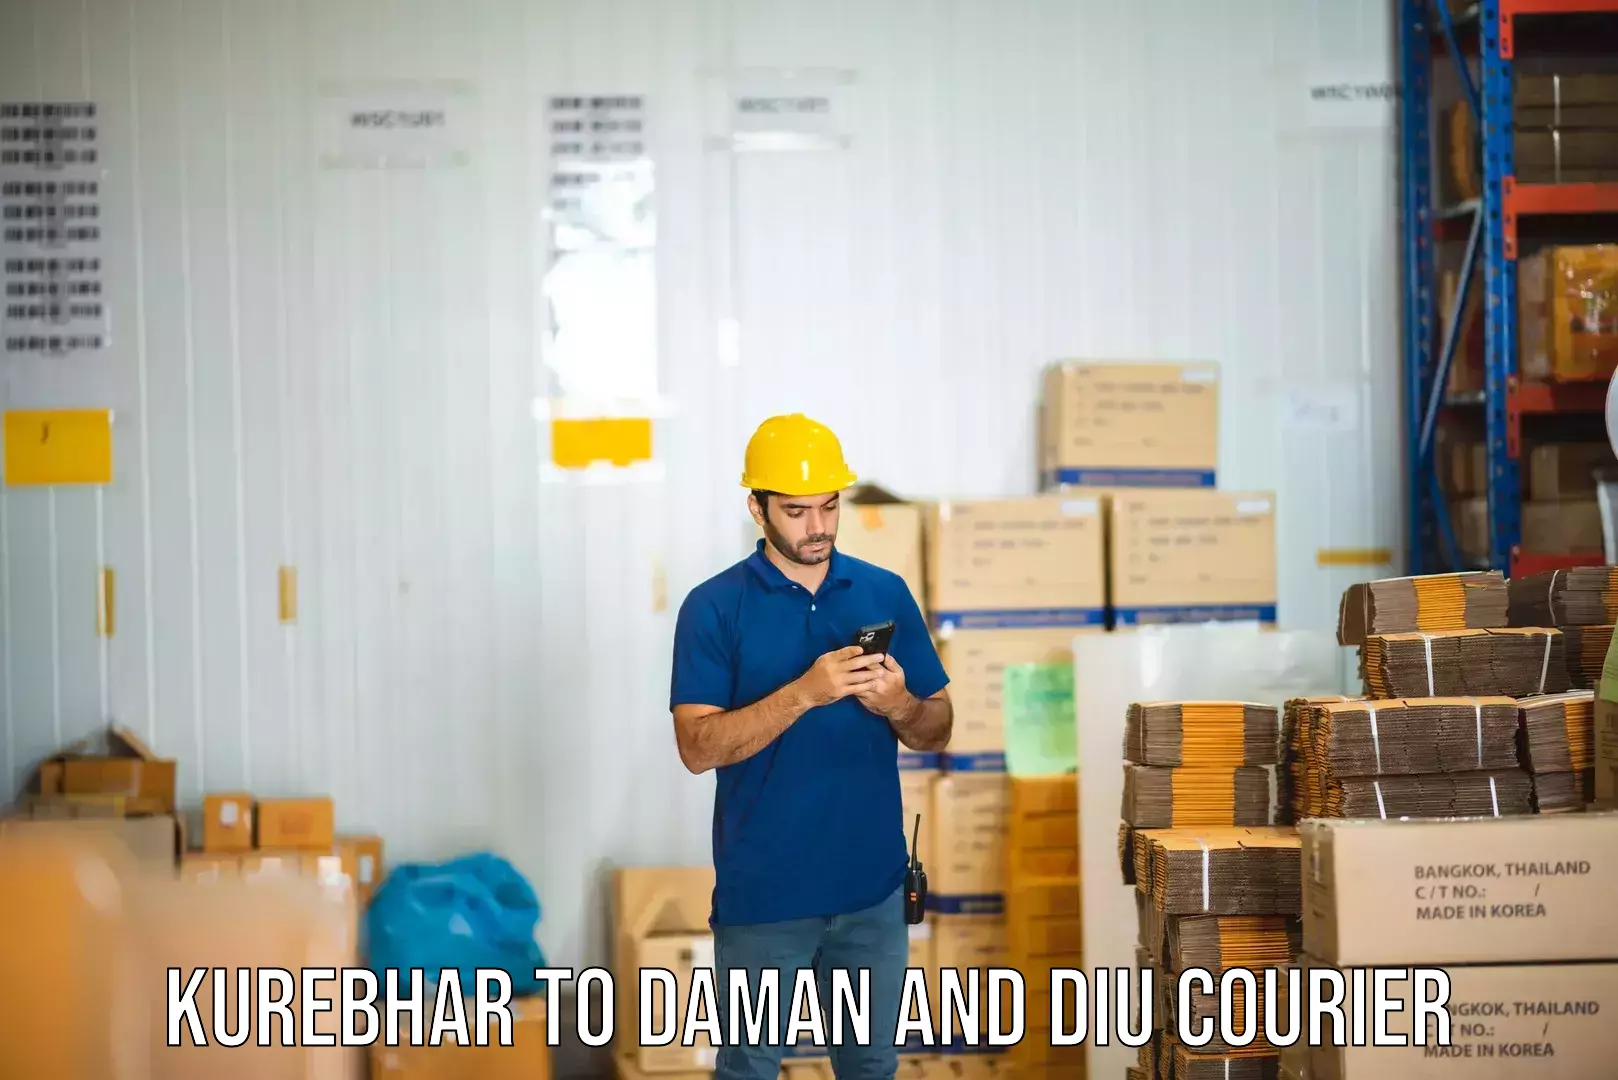 Efficient cargo handling in Kurebhar to Daman and Diu